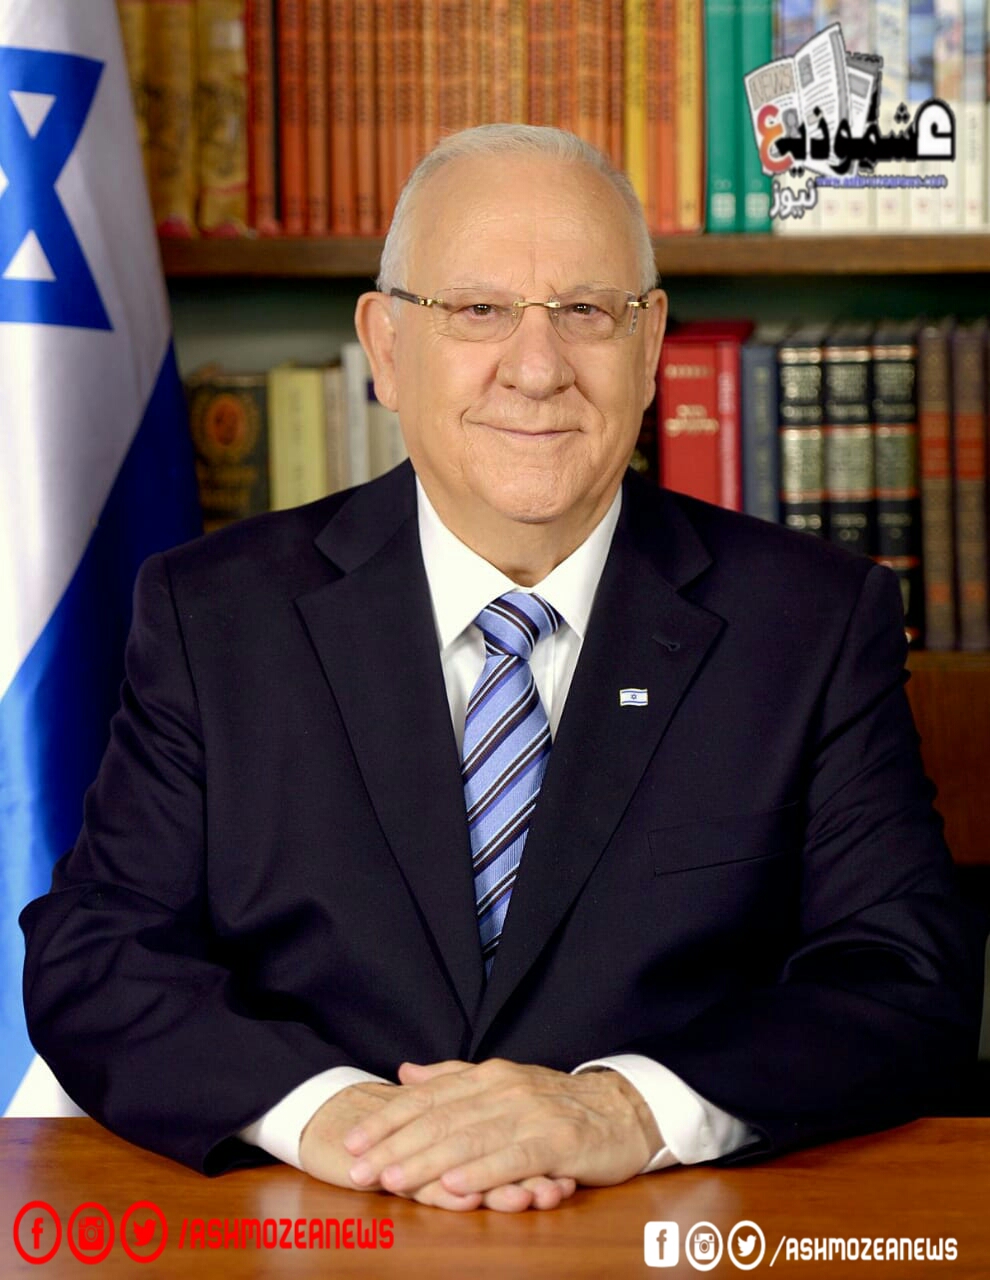 نقل الرئيس الإسرائيلي لمستشفى هداسا في القدس